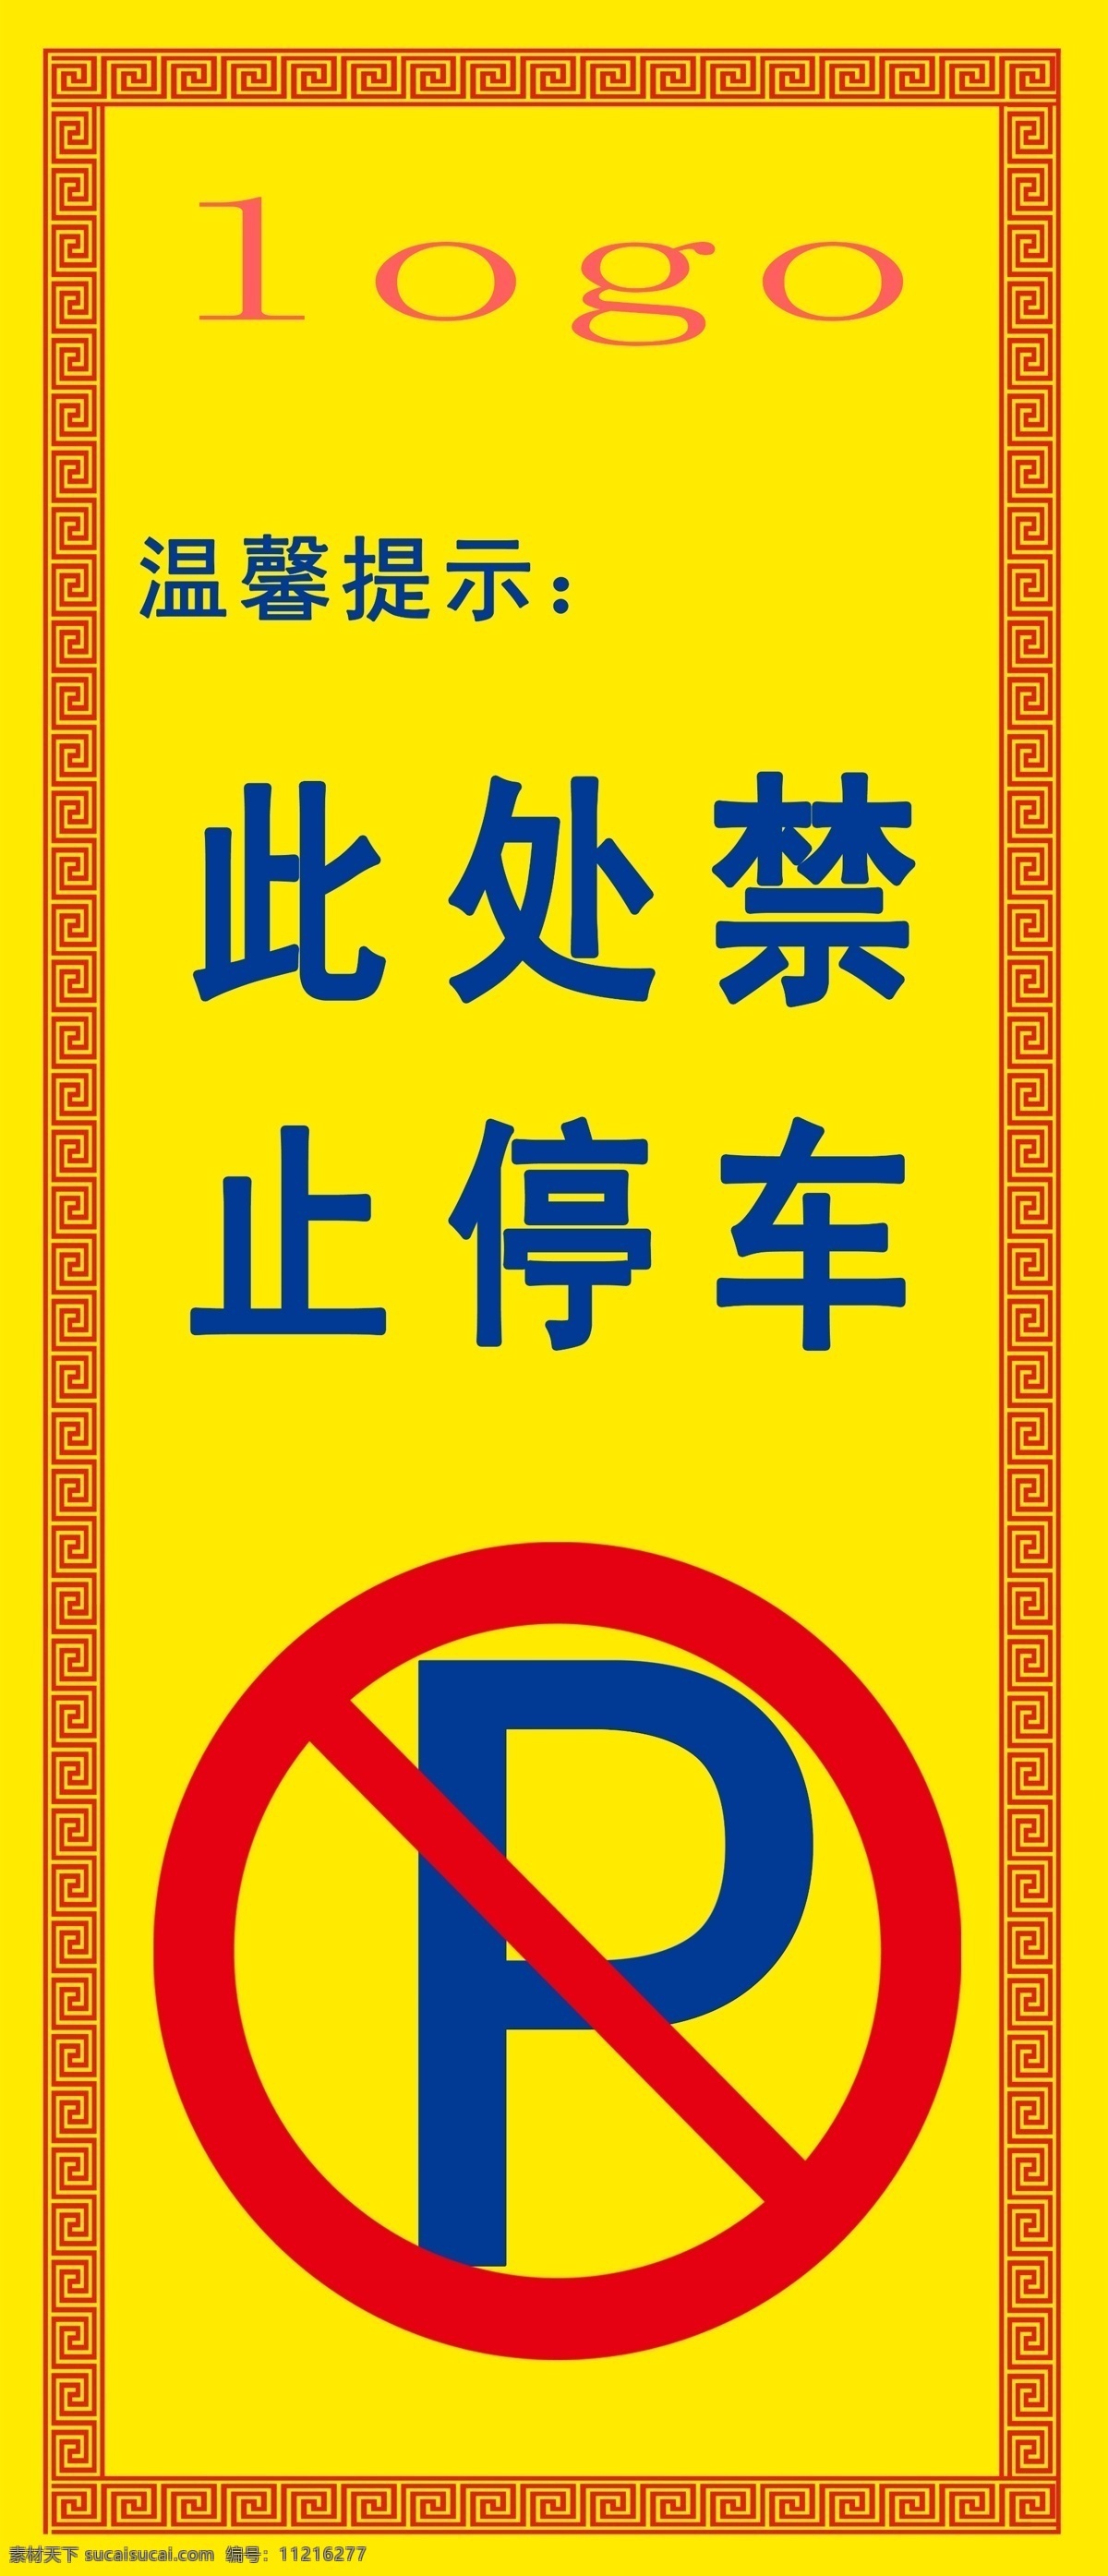 禁止停车标语 标语 p 禁止停车 温馨提示 交警提示标语 分层